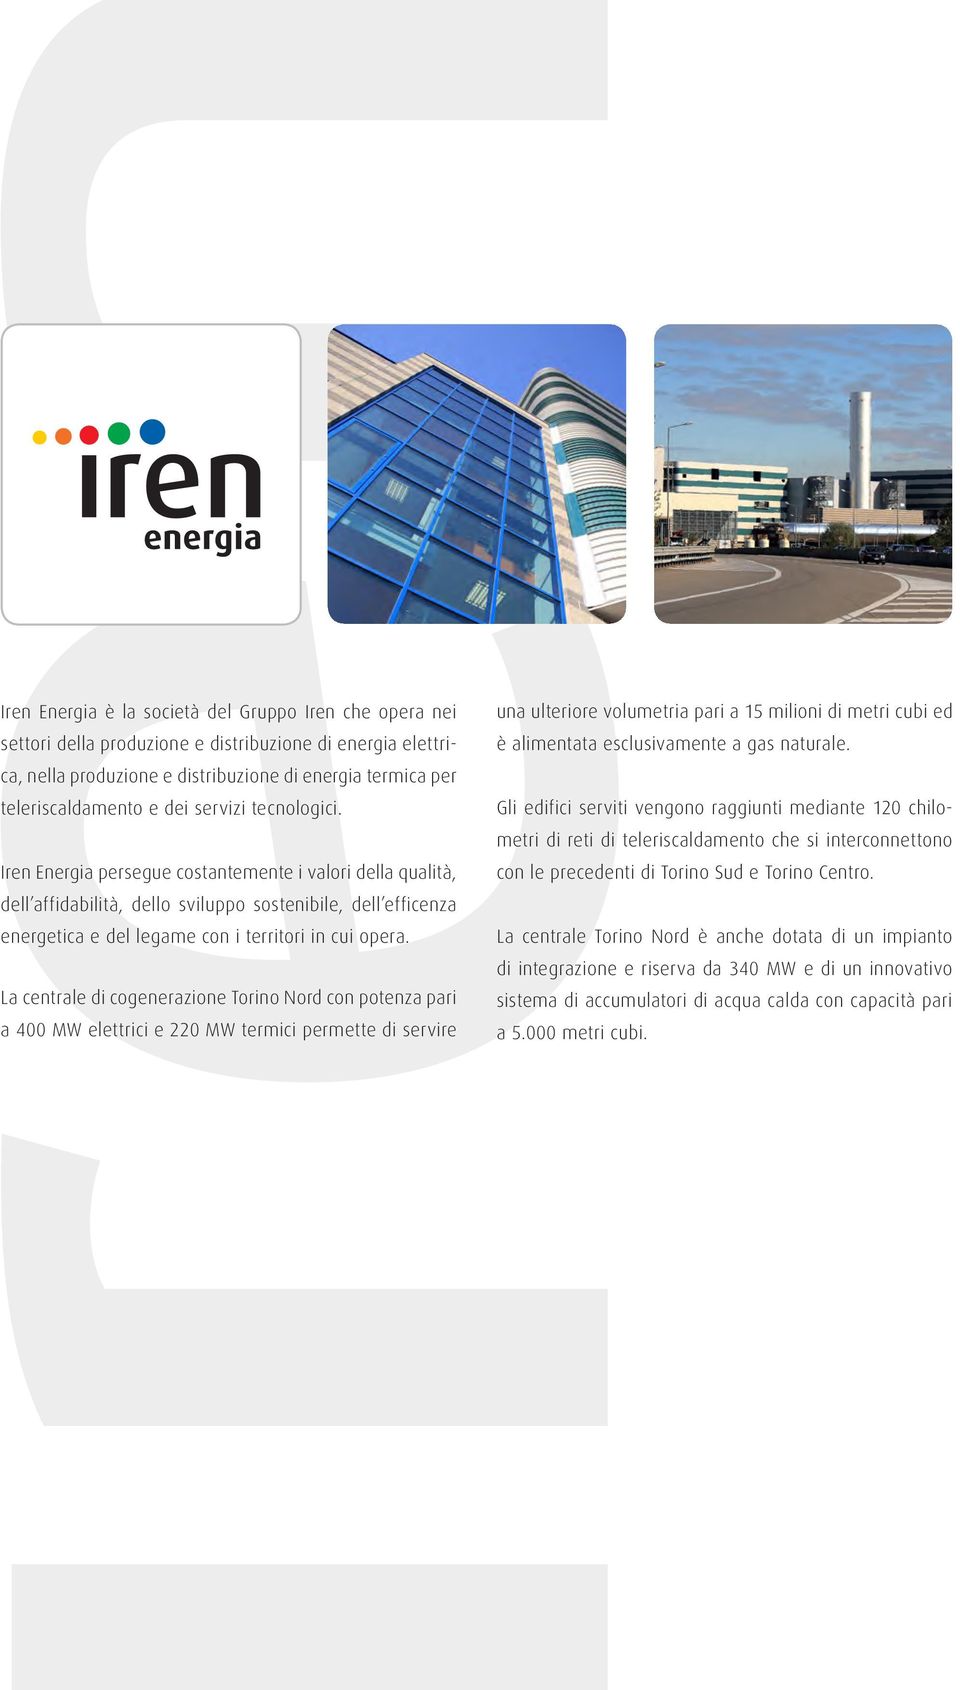 La centrale di cogenerazione Torino Nord con potenza pari a 400 MW elettrici e 220 MW termici permette di servire una ulteriore volumetria pari a 15 milioni di metri cubi ed è alimentata